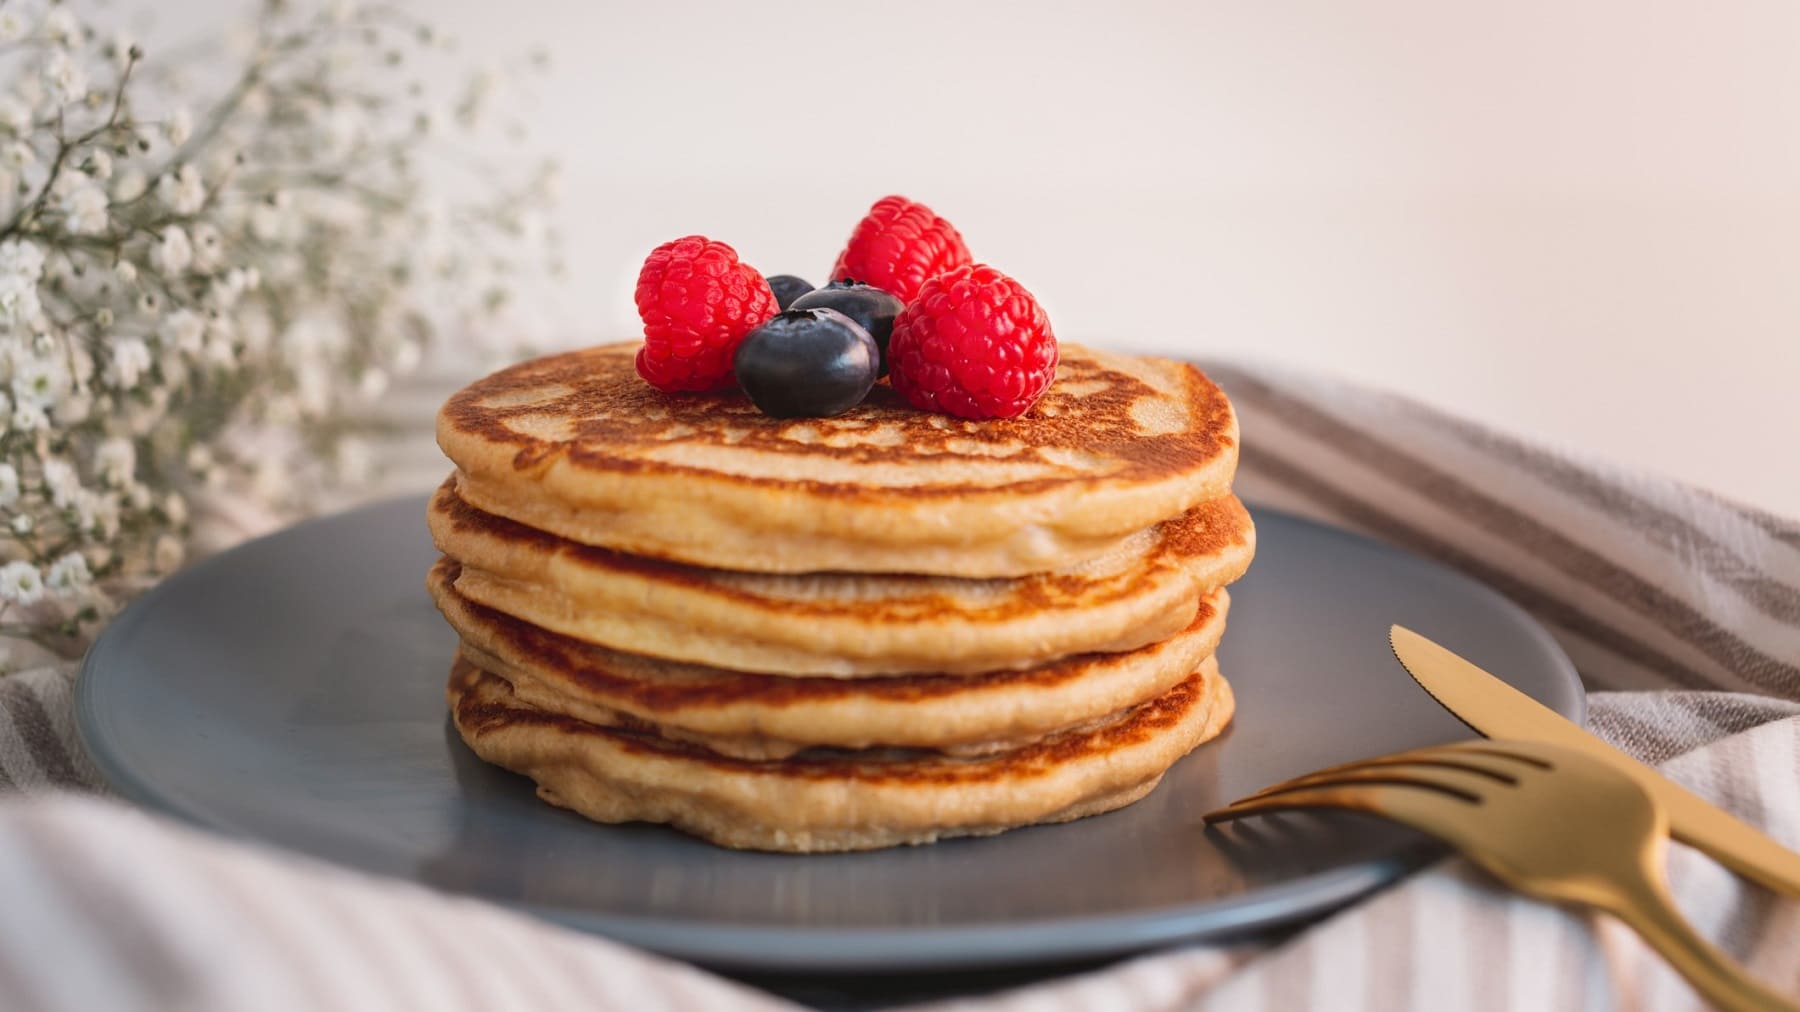 Ein Stapel vegane Pancakes mit frischen Beeren auf einem dunkelgrauen Teller, daneben goldenes Besteck.